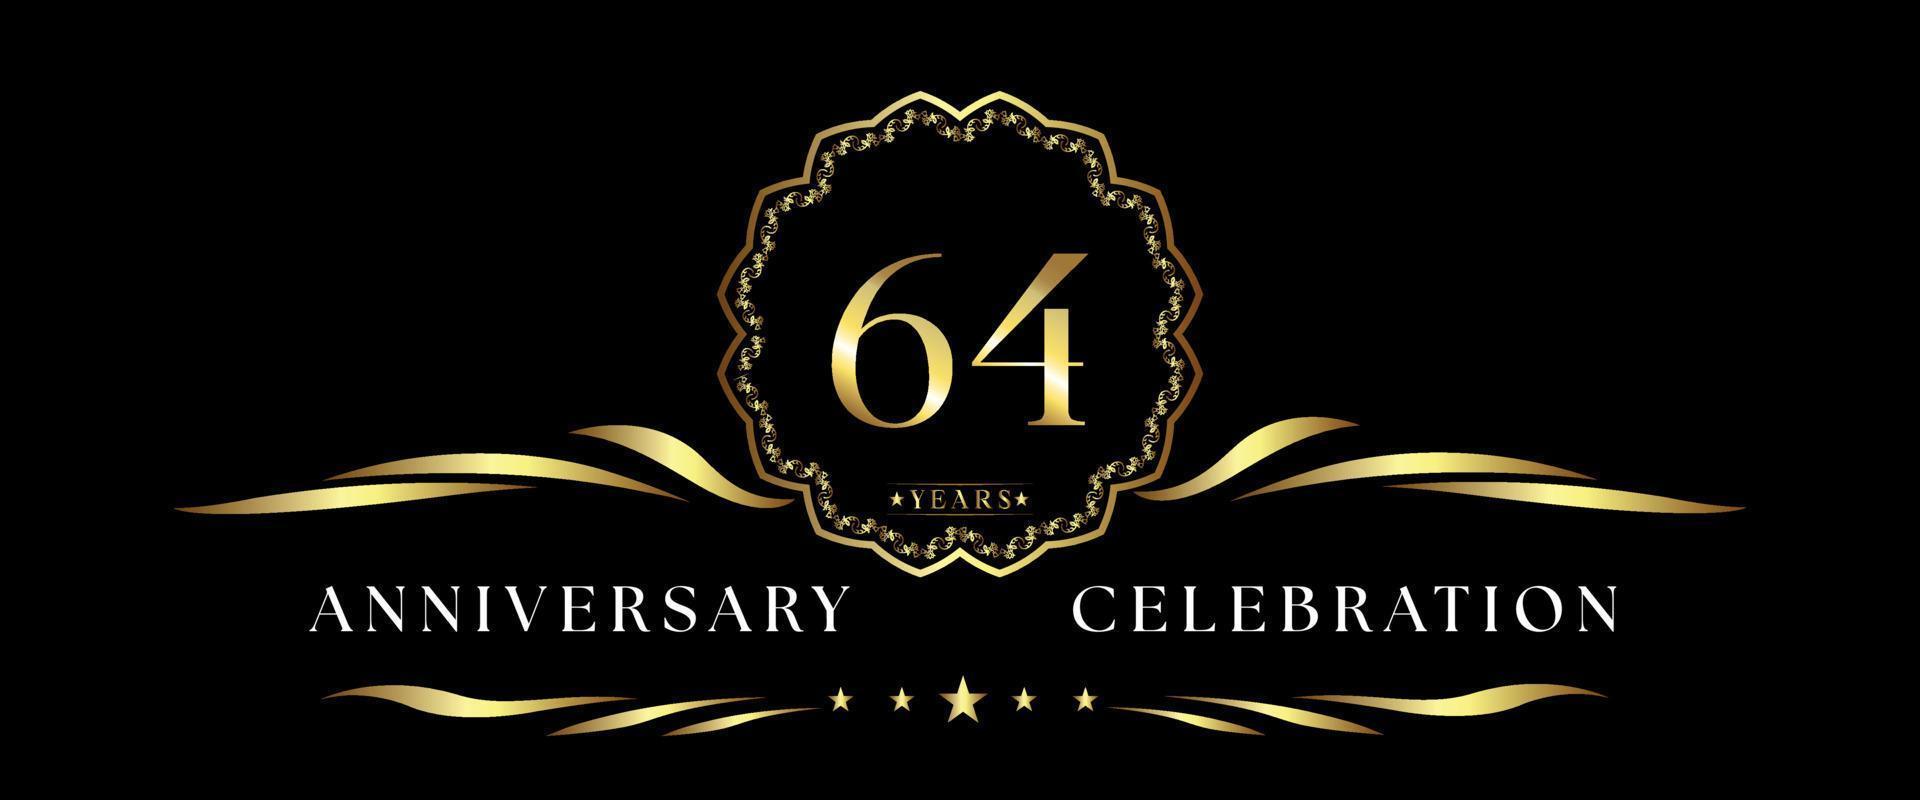 Celebración del aniversario de 64 años con marco decorativo dorado aislado en fondo negro. diseño vectorial para tarjetas de felicitación, fiesta de cumpleaños, boda, fiesta de eventos, ceremonia. Logotipo de aniversario de 64 años. vector